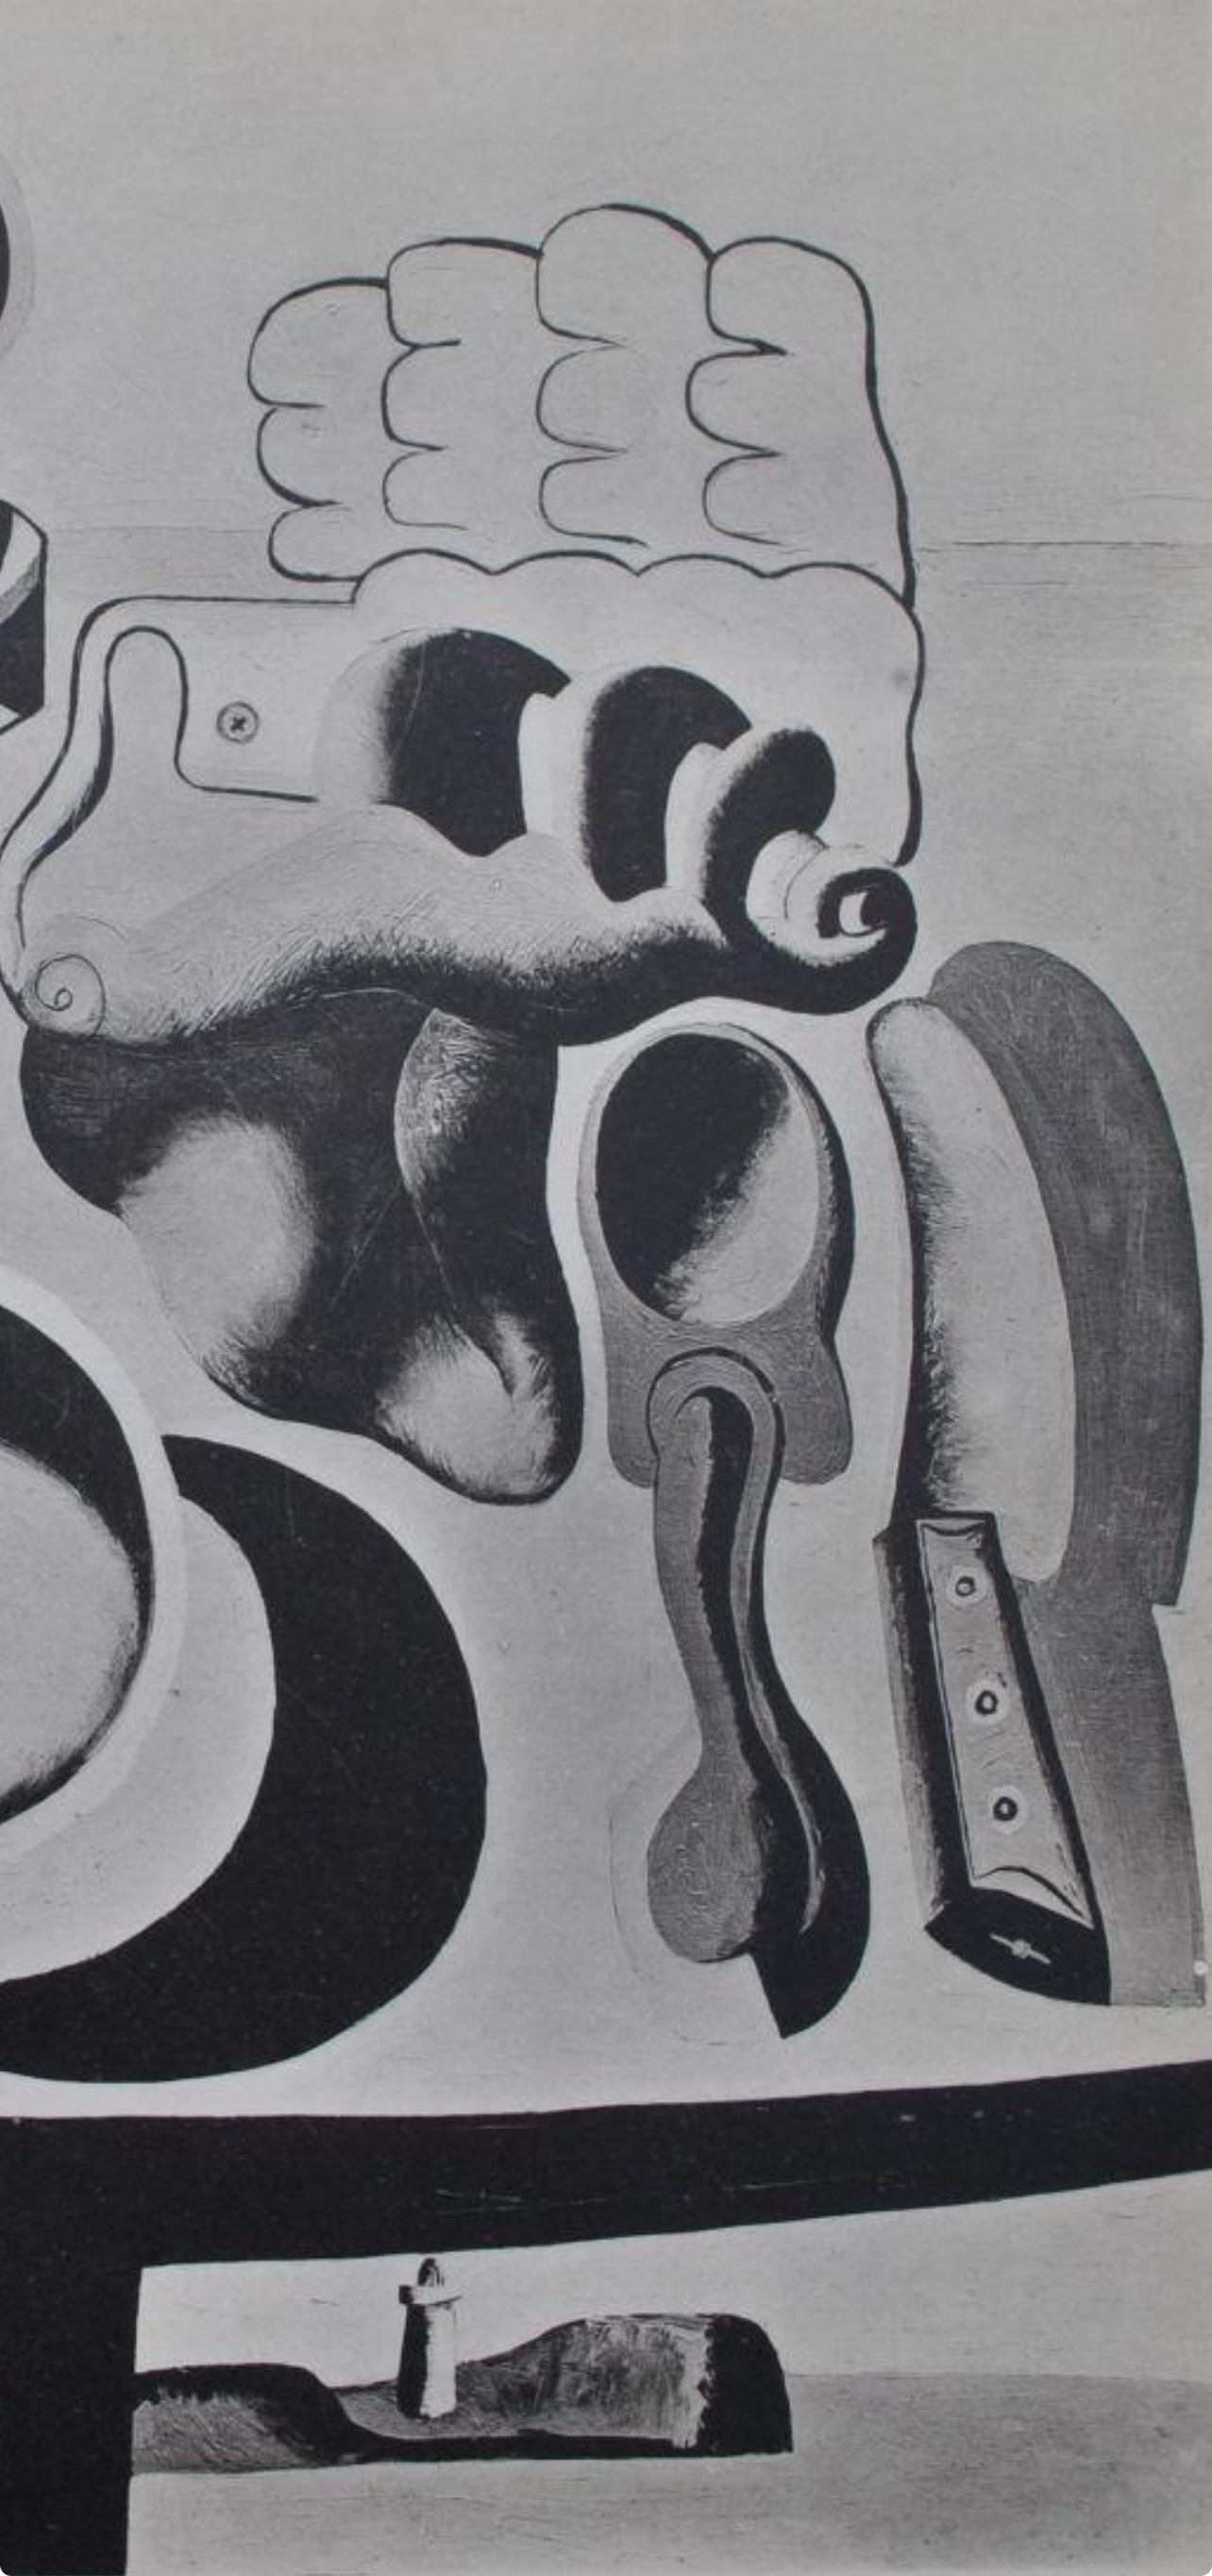 Le Corbusier, Composition, Le Corbusier Œuvre Plastique (after) 1